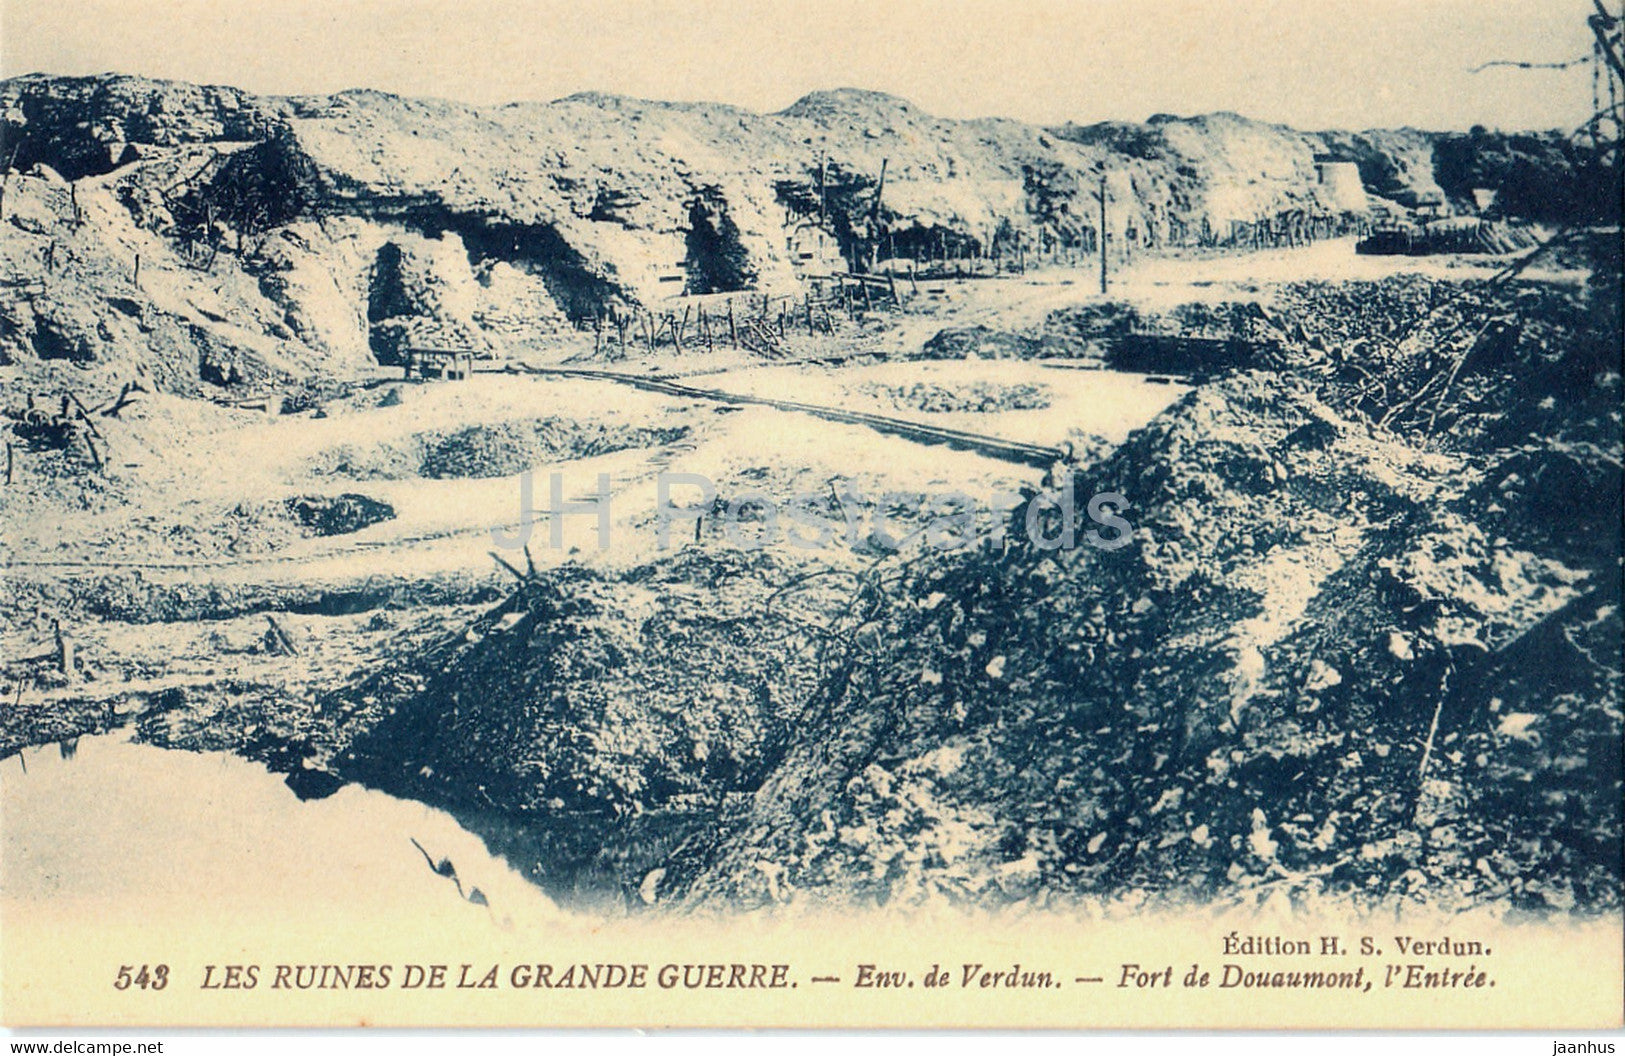 Les Ruines de la Grande Guerre - env de Verdun - Fort de Douaumont - 543 military - WWI - old postcard - France - unused - JH Postcards